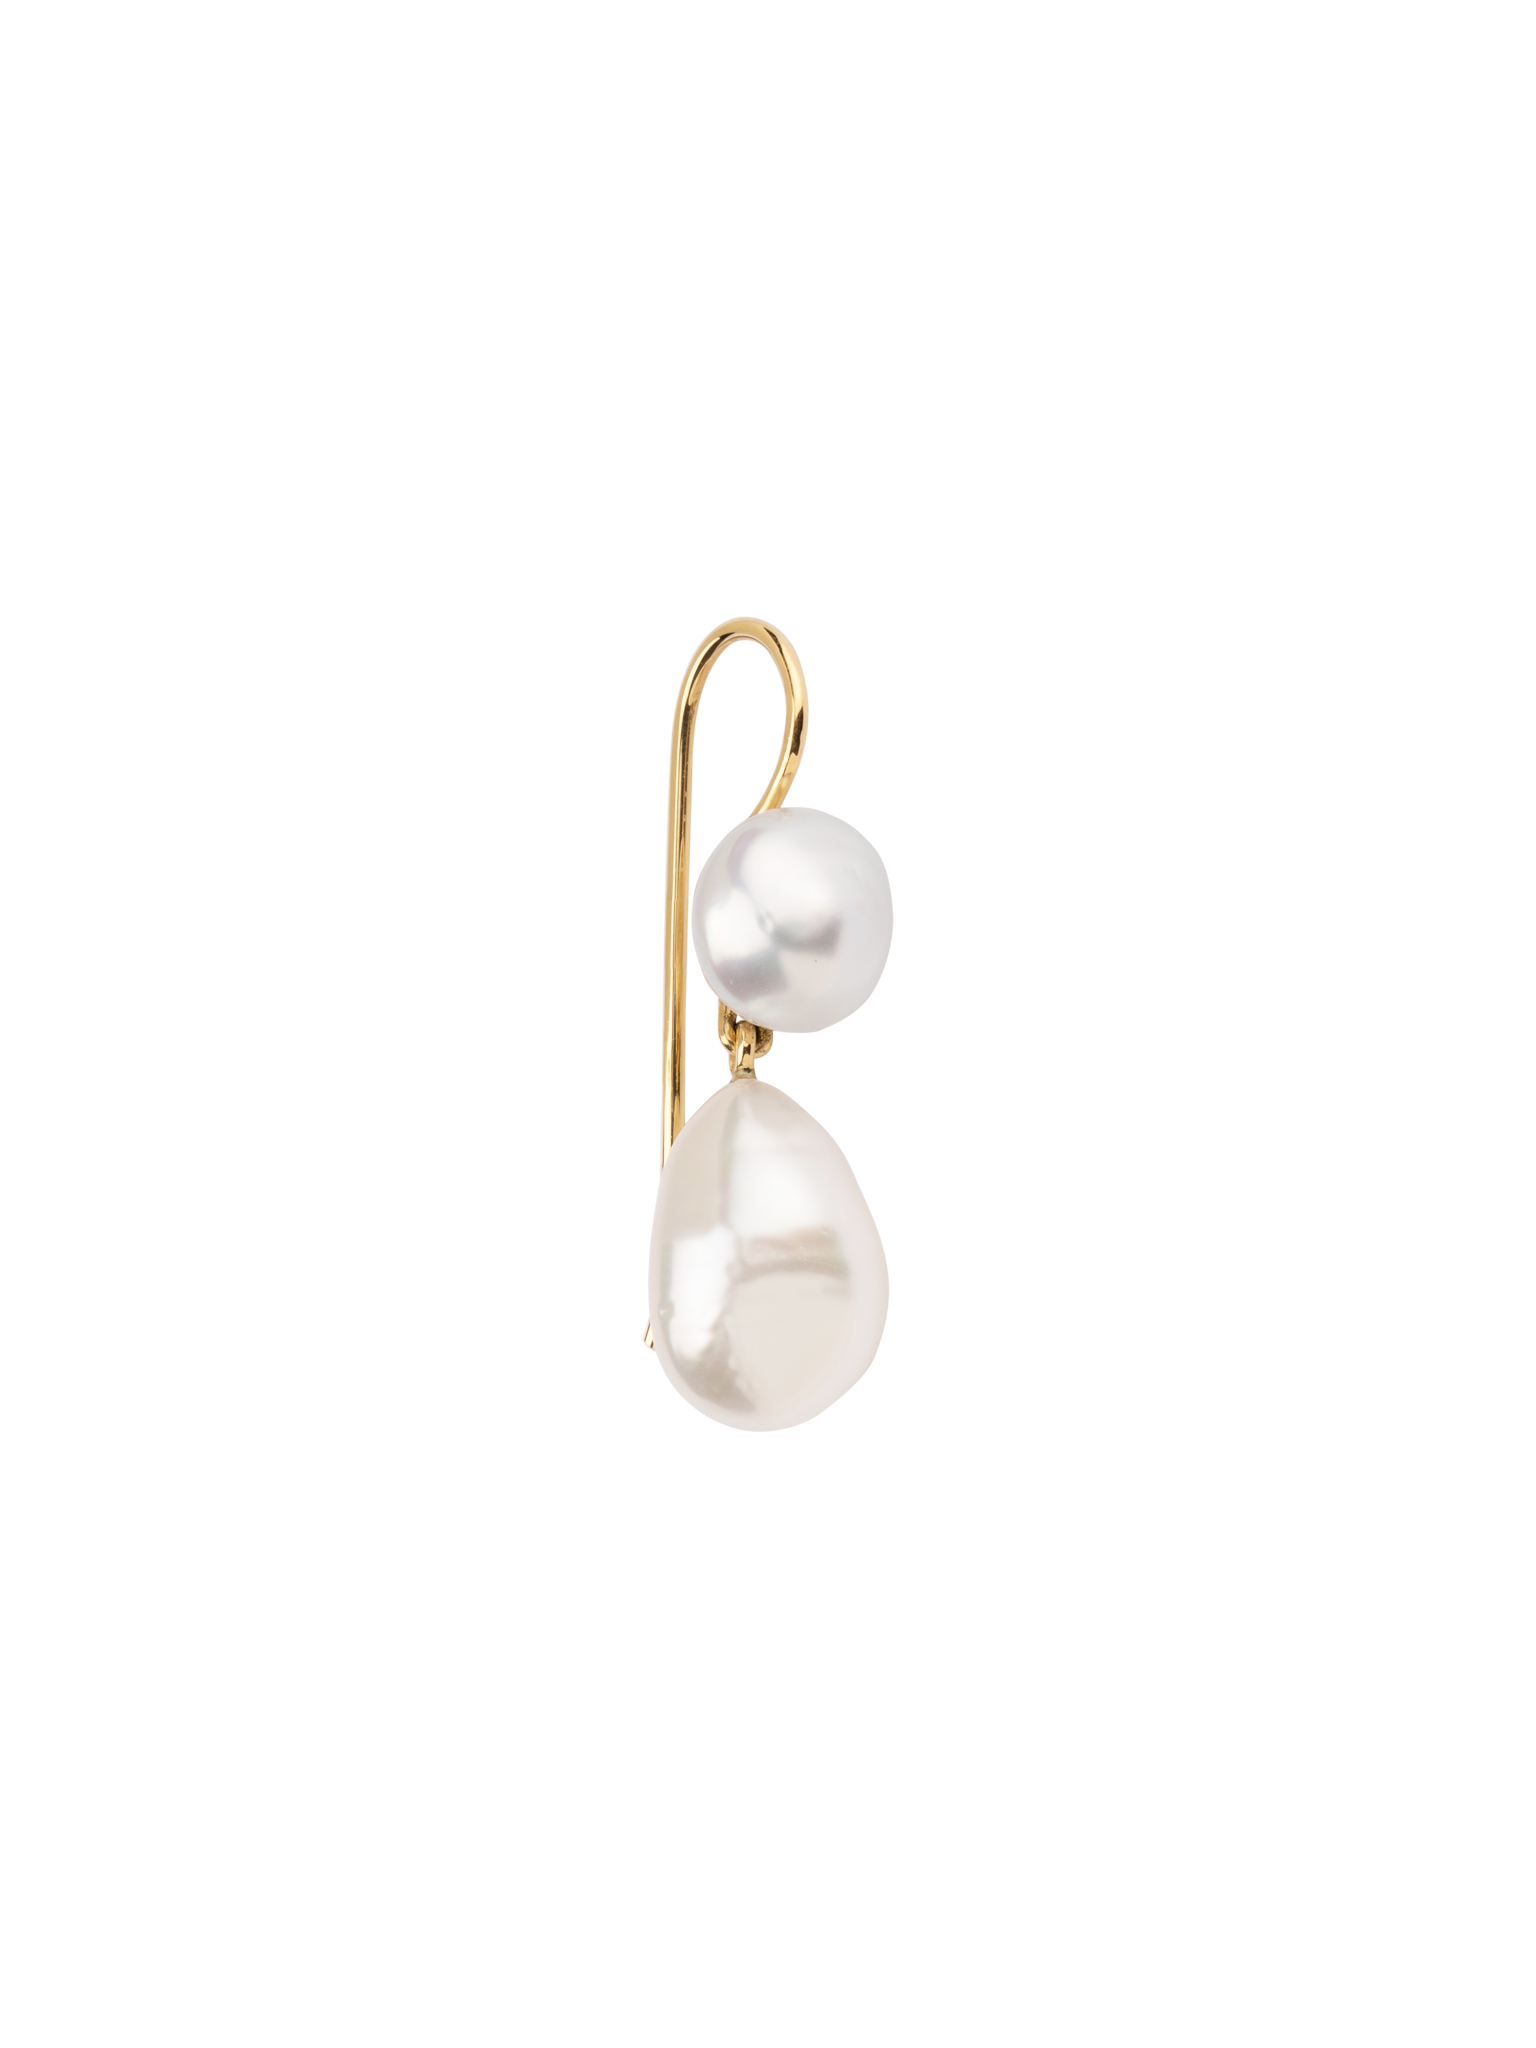 Two pearl earring